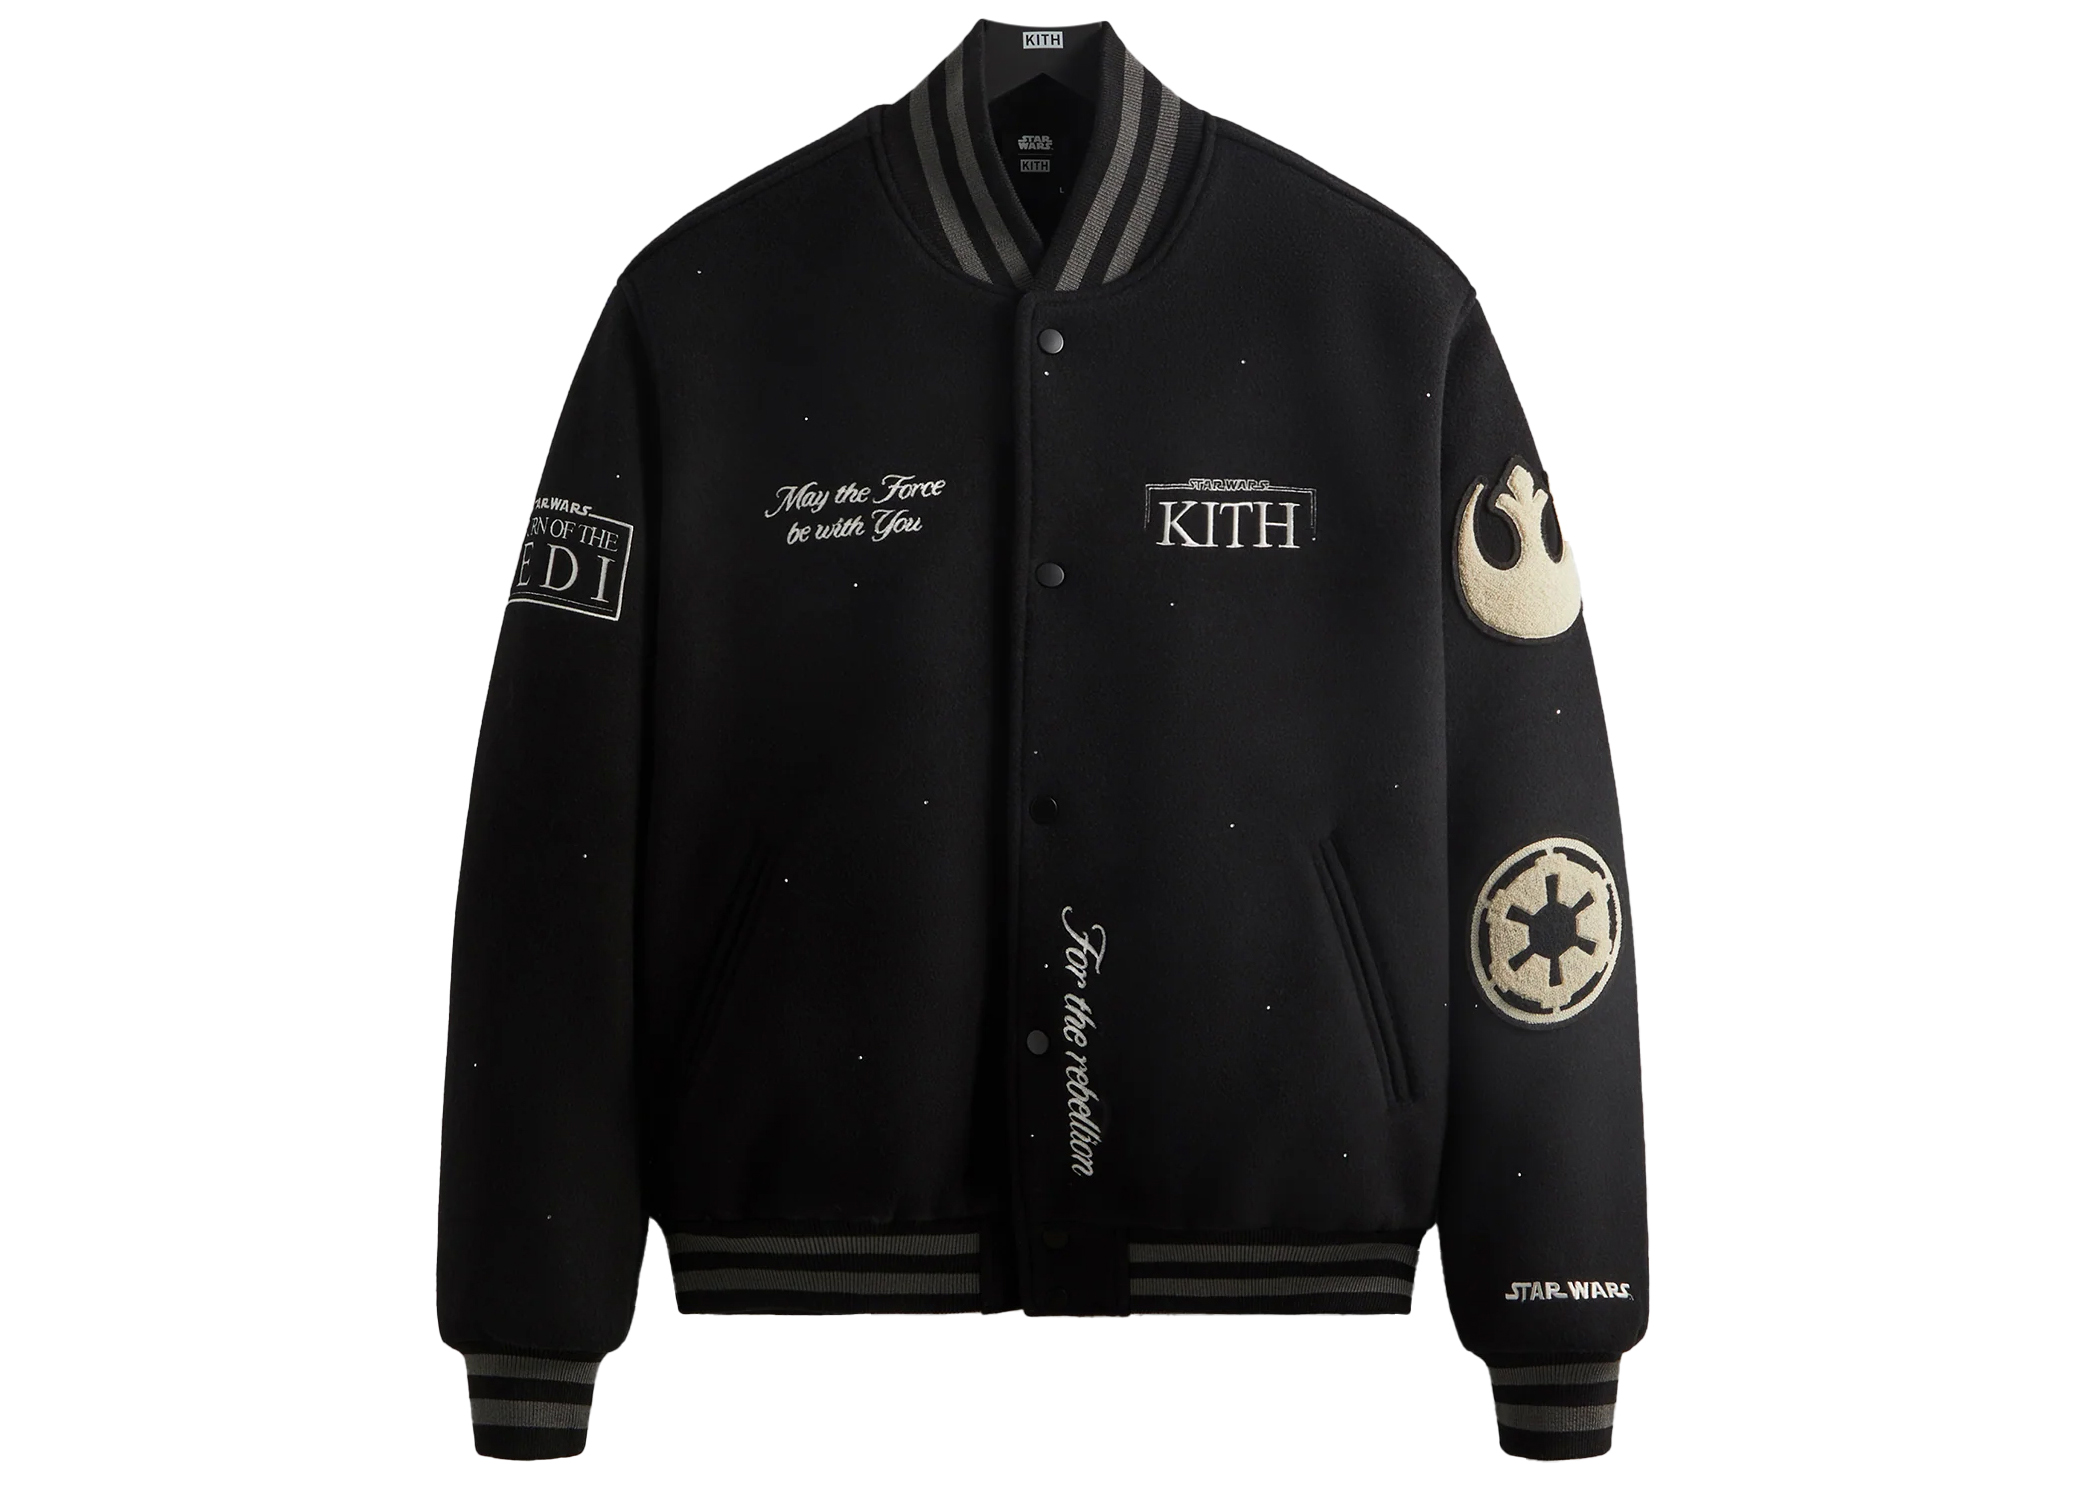 Kith x STAR WARS Swarovski Crystals Anniversary Varsity Jacket Black